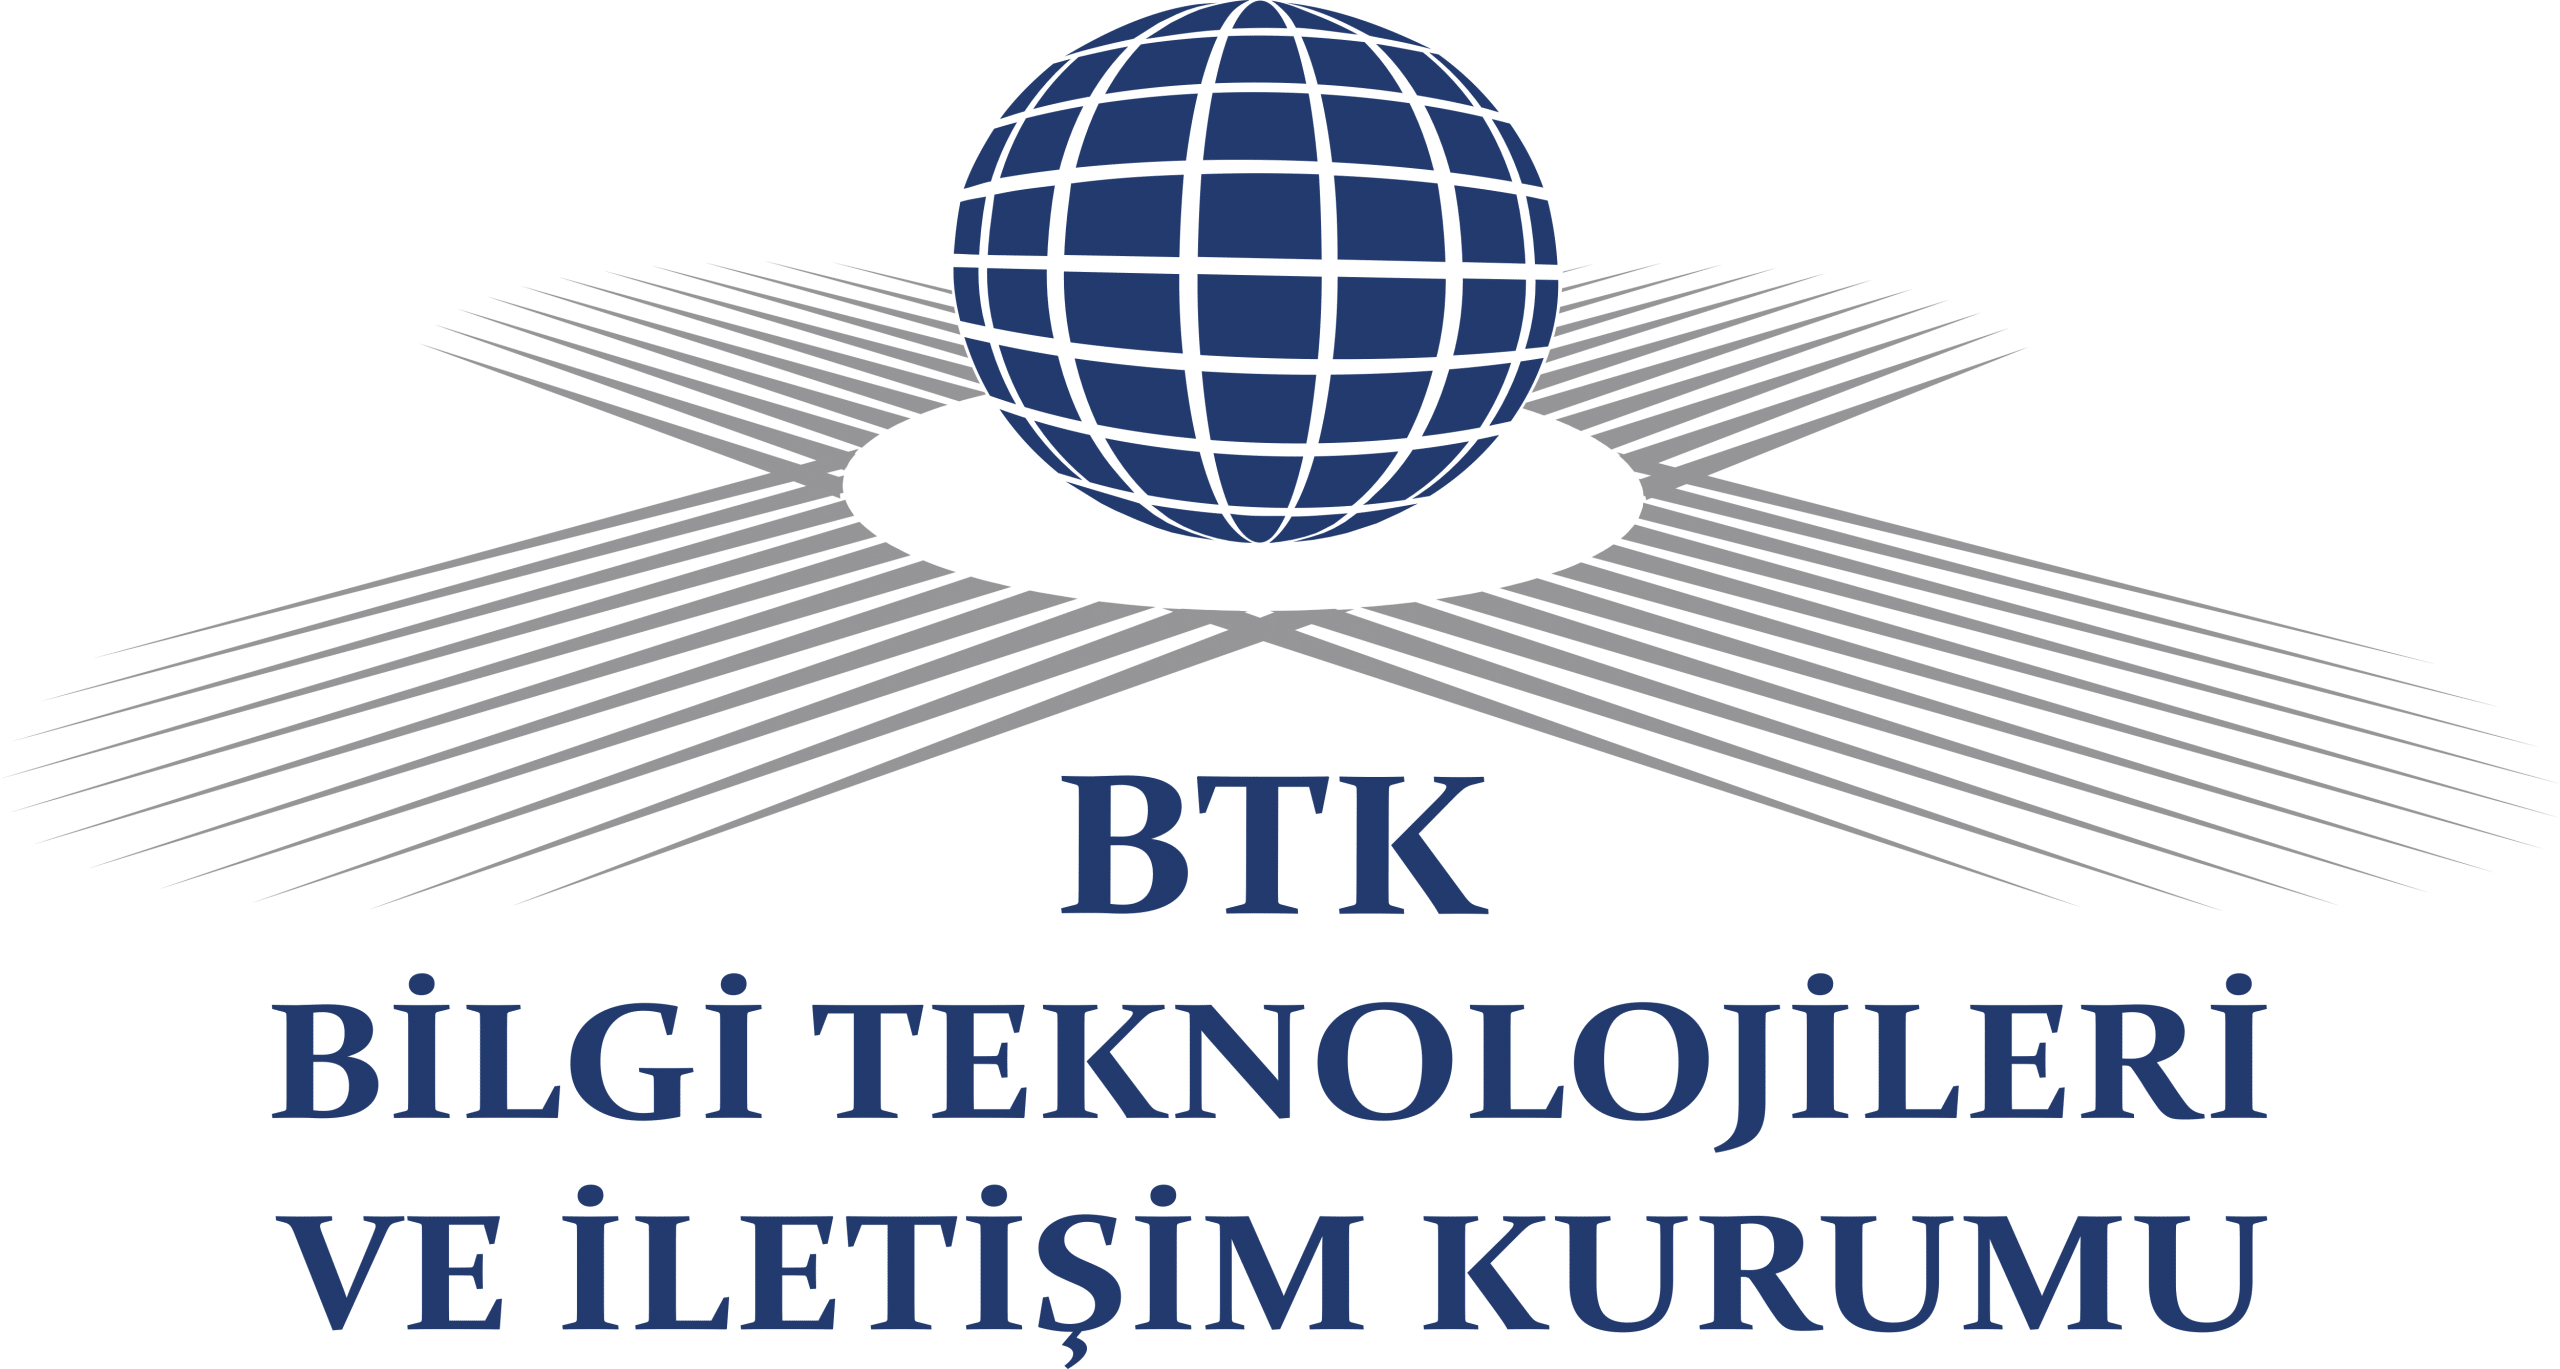 BTK (Bilgi iletişim teknolojileri kurumu)